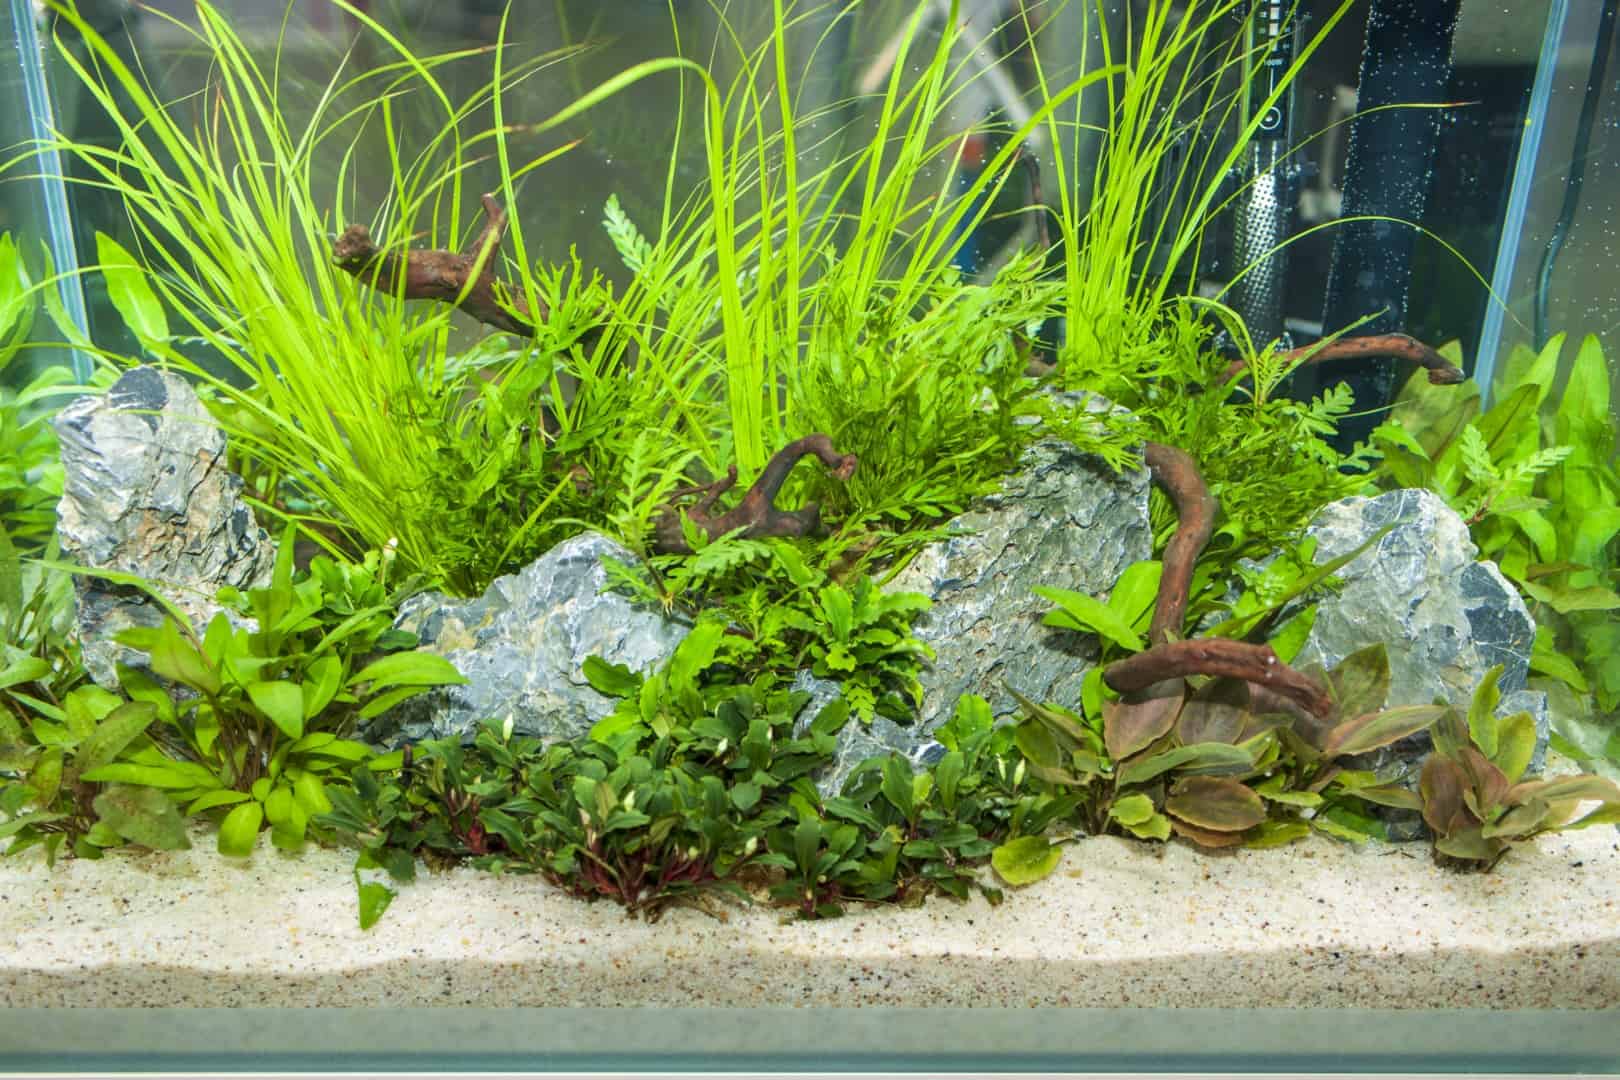 Pflanzenvielfalt im Unterwassergarten - Aquarien interessant gestalten 3